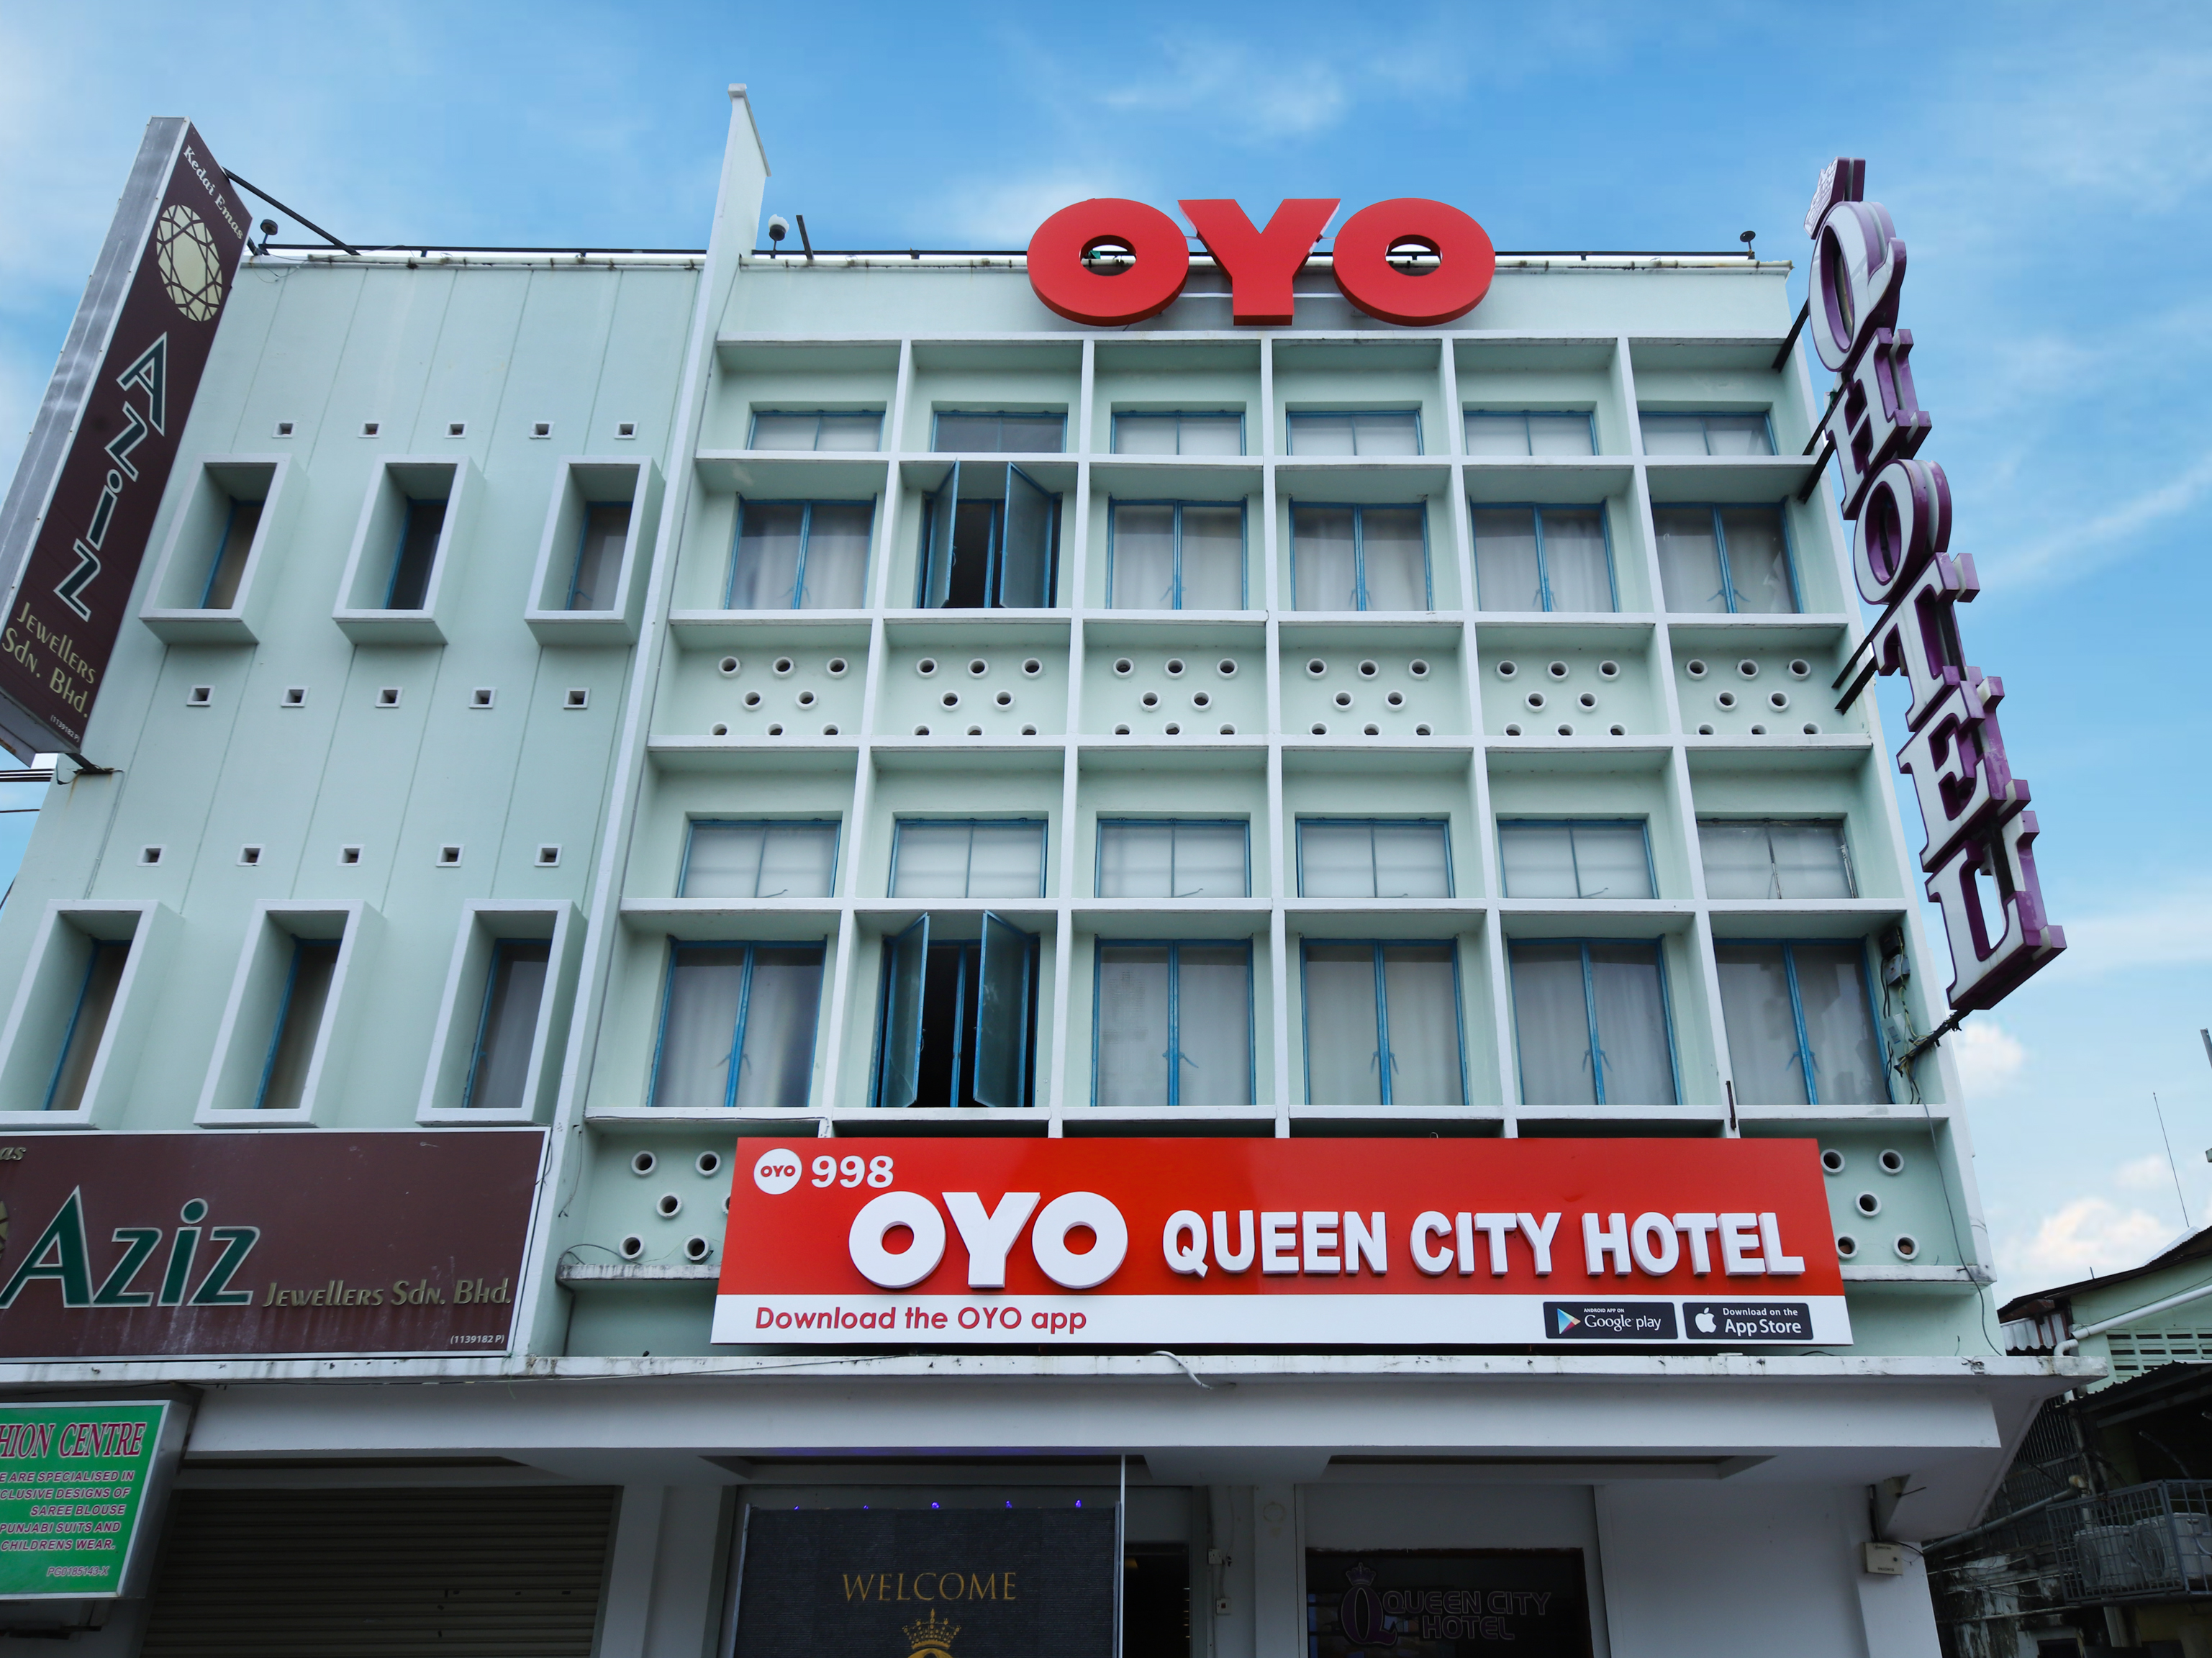 Queen City Hotel